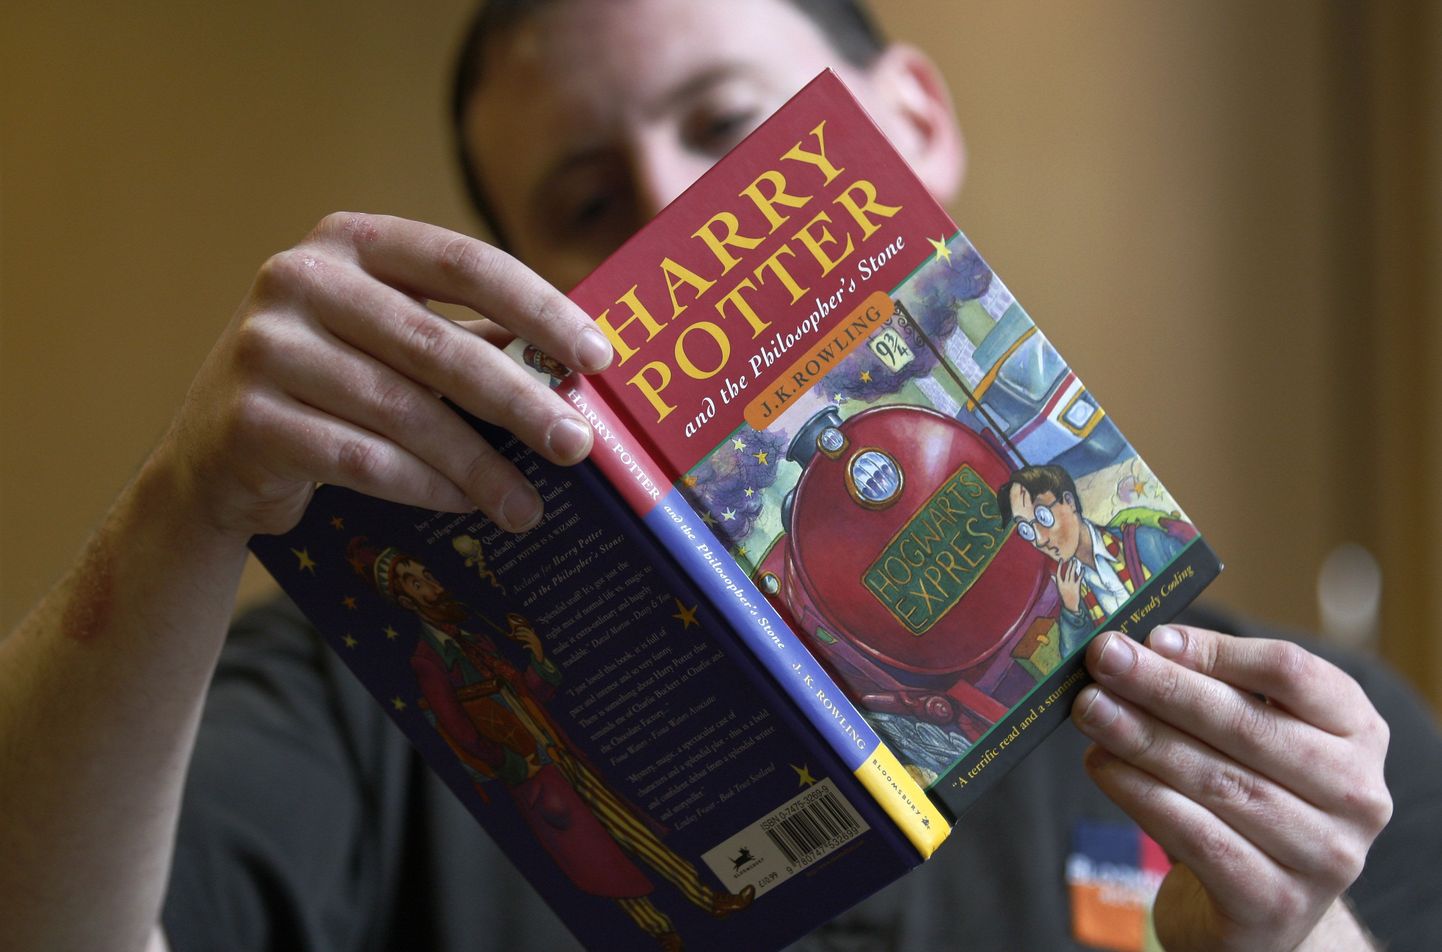 Pildil raamatu "Harry Potter ja Tarkade Kivi" eksemplar esimesest trükipartiist. Pildil kujutatud noormees pole vargusega seotud